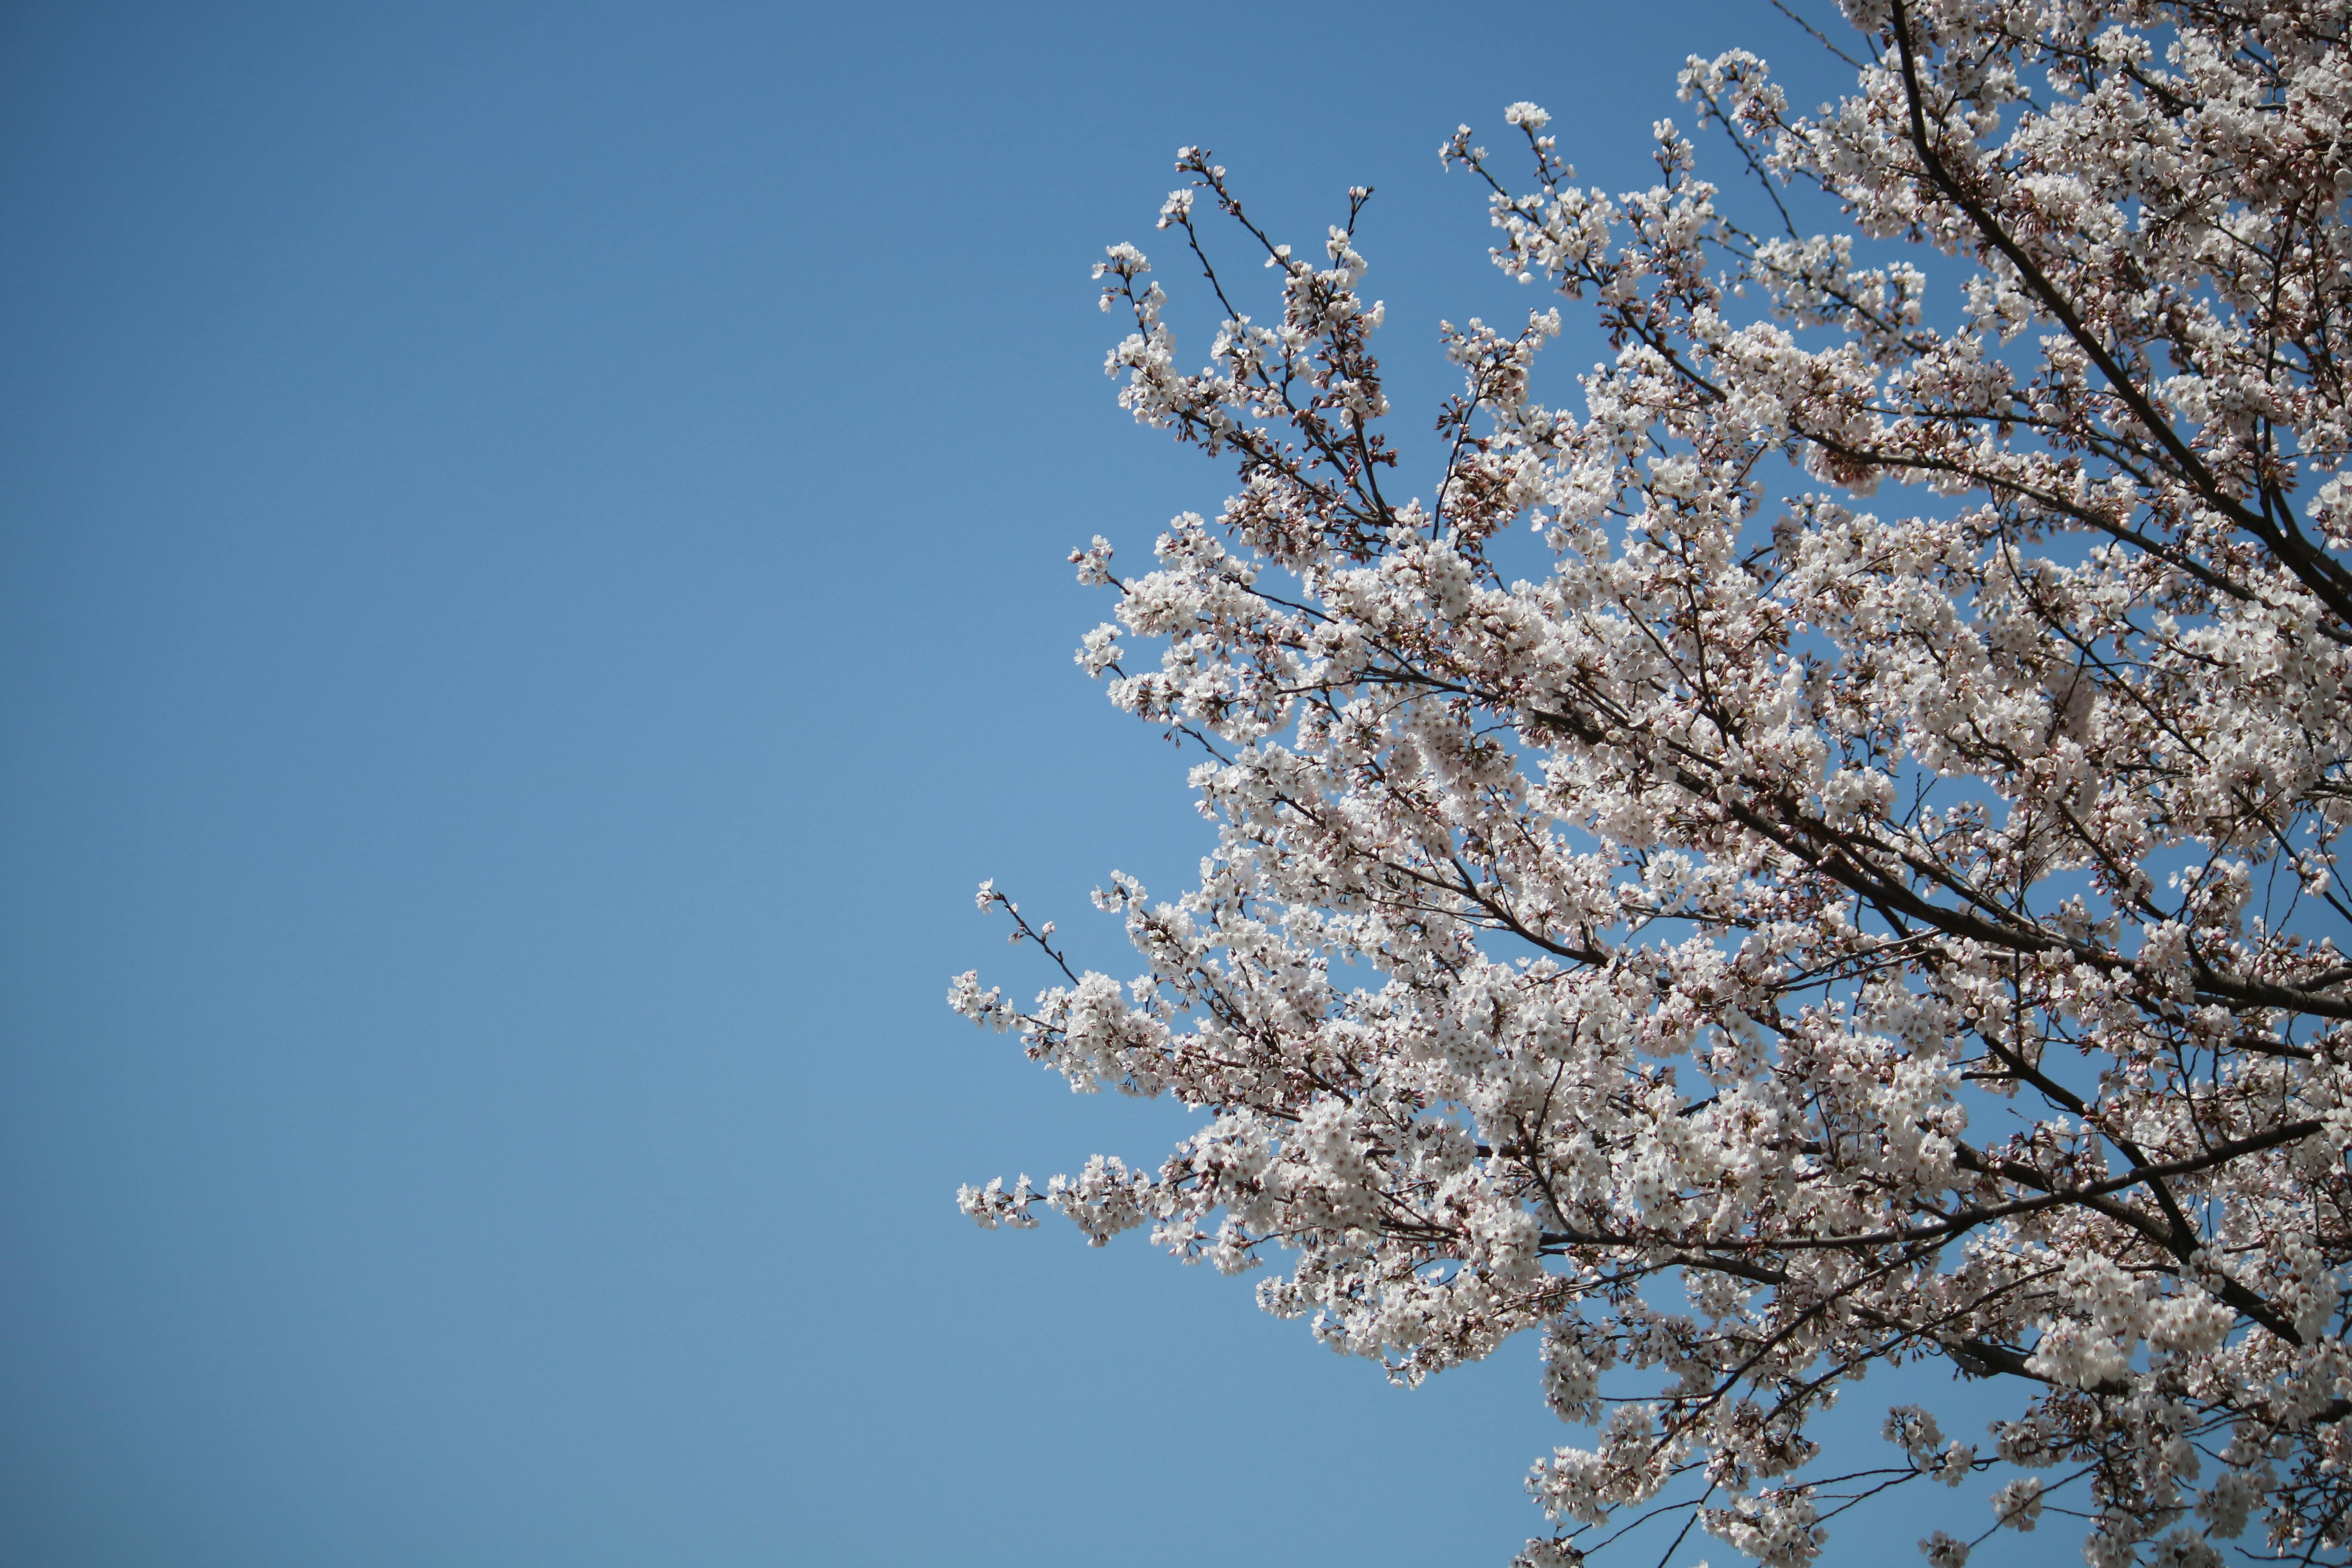 Cherry Blossom Stock Photo - Tận hưởng vẻ đẹp ngày xuân rực rỡ của hoa Anh Đào. Chọn ngay bức tranh với không gian đầy màu sắc để tận hưởng tất cả những giây phút vui vẻ và đam mê. Hãy yêu cuộc sống và đắm chìm vào trái tim ngập tràn niềm vui.